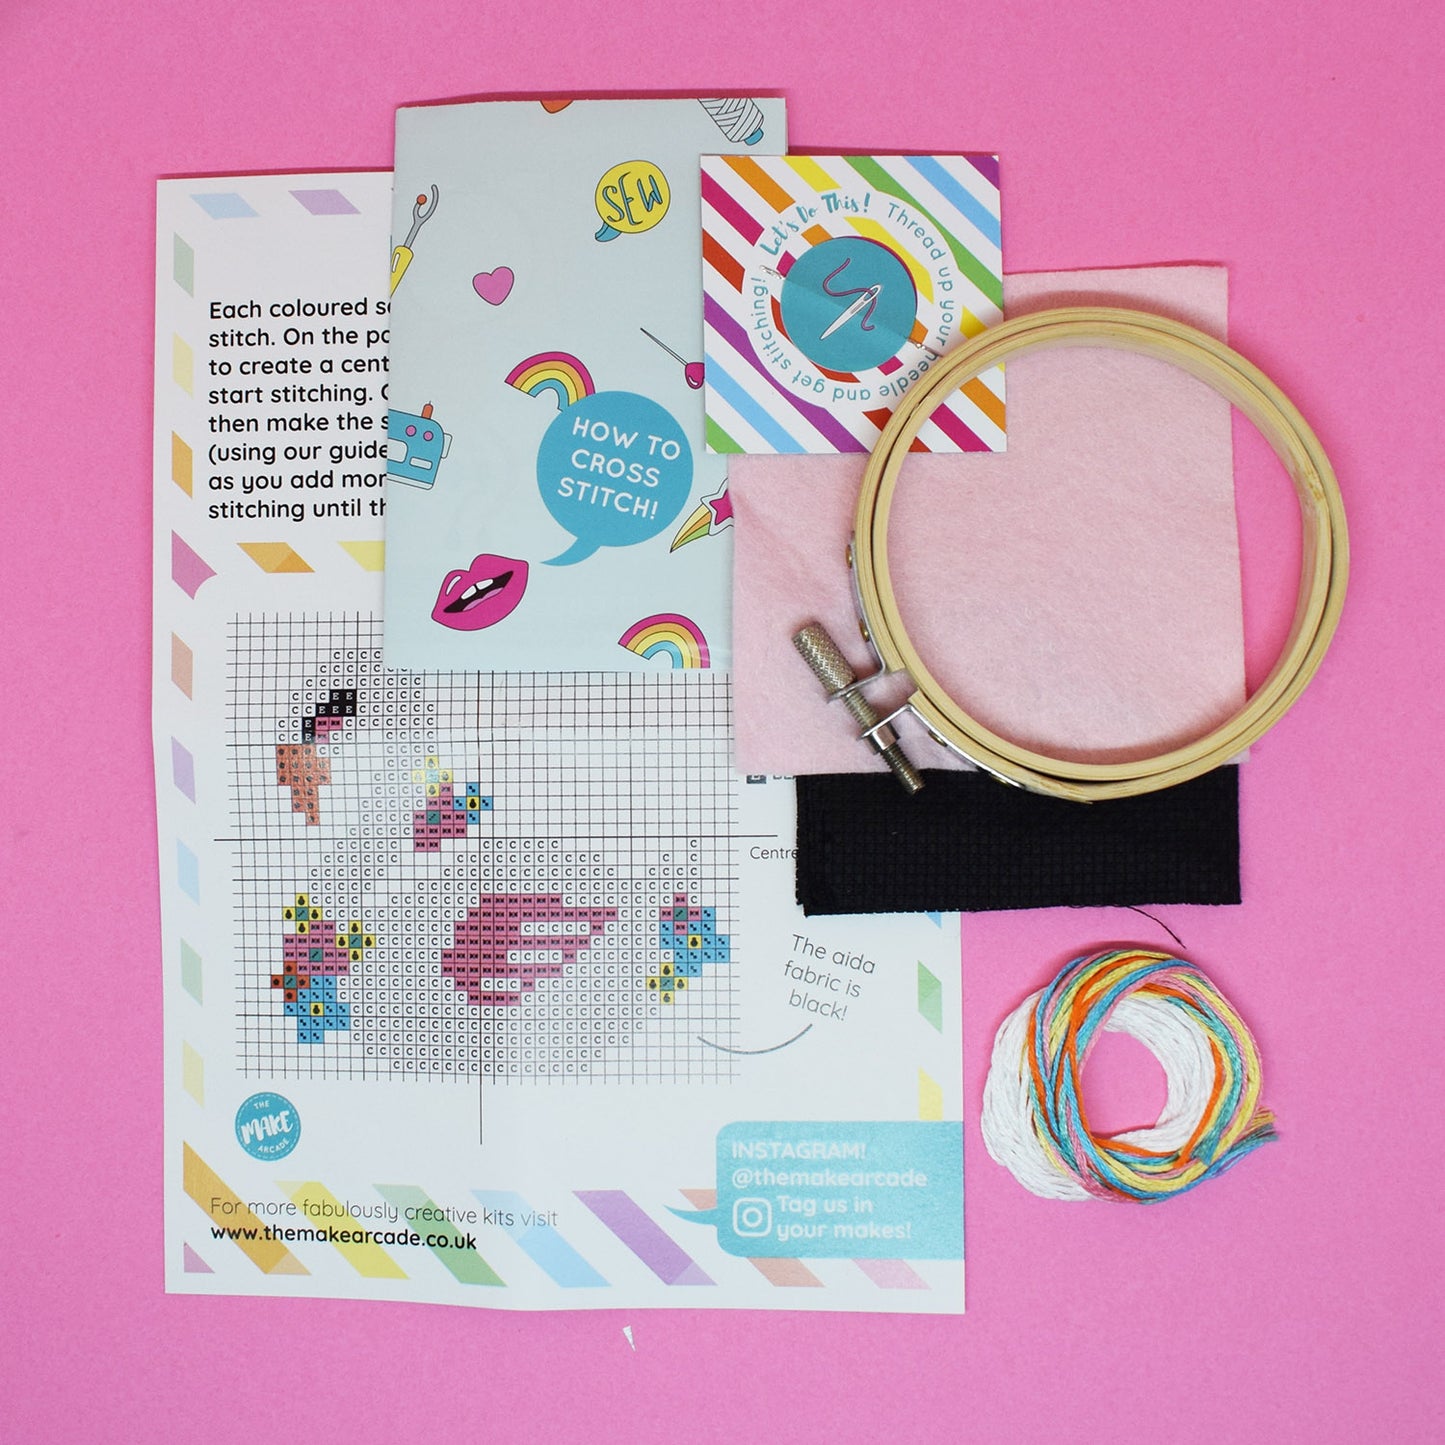 'Swan' Mini Cross Stitch Kit